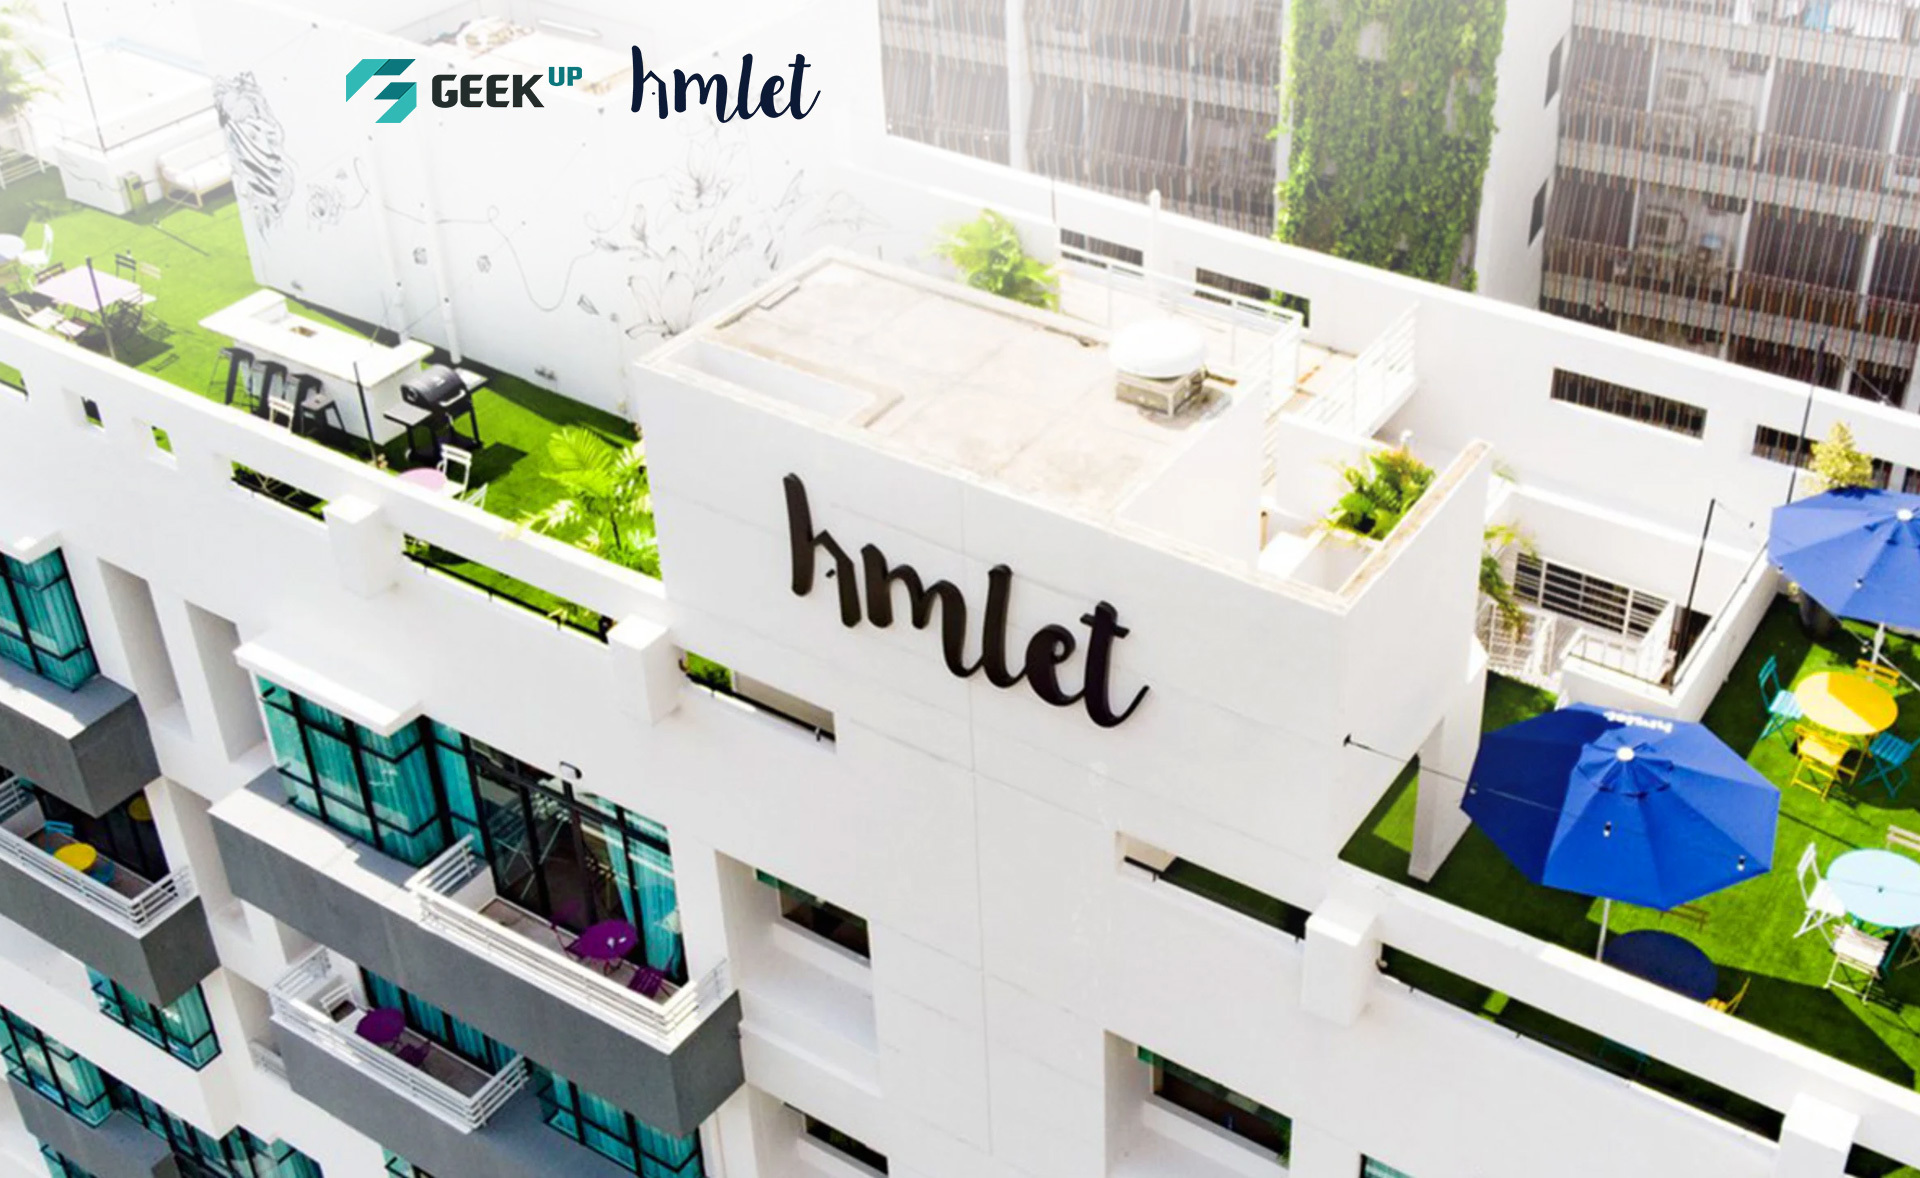 Quản lý hệ thống frontend & backend cho Hmlet - startup co-living có tốc độ tăng trưởng nhanh nhất châu Á-Thái Bình Dương